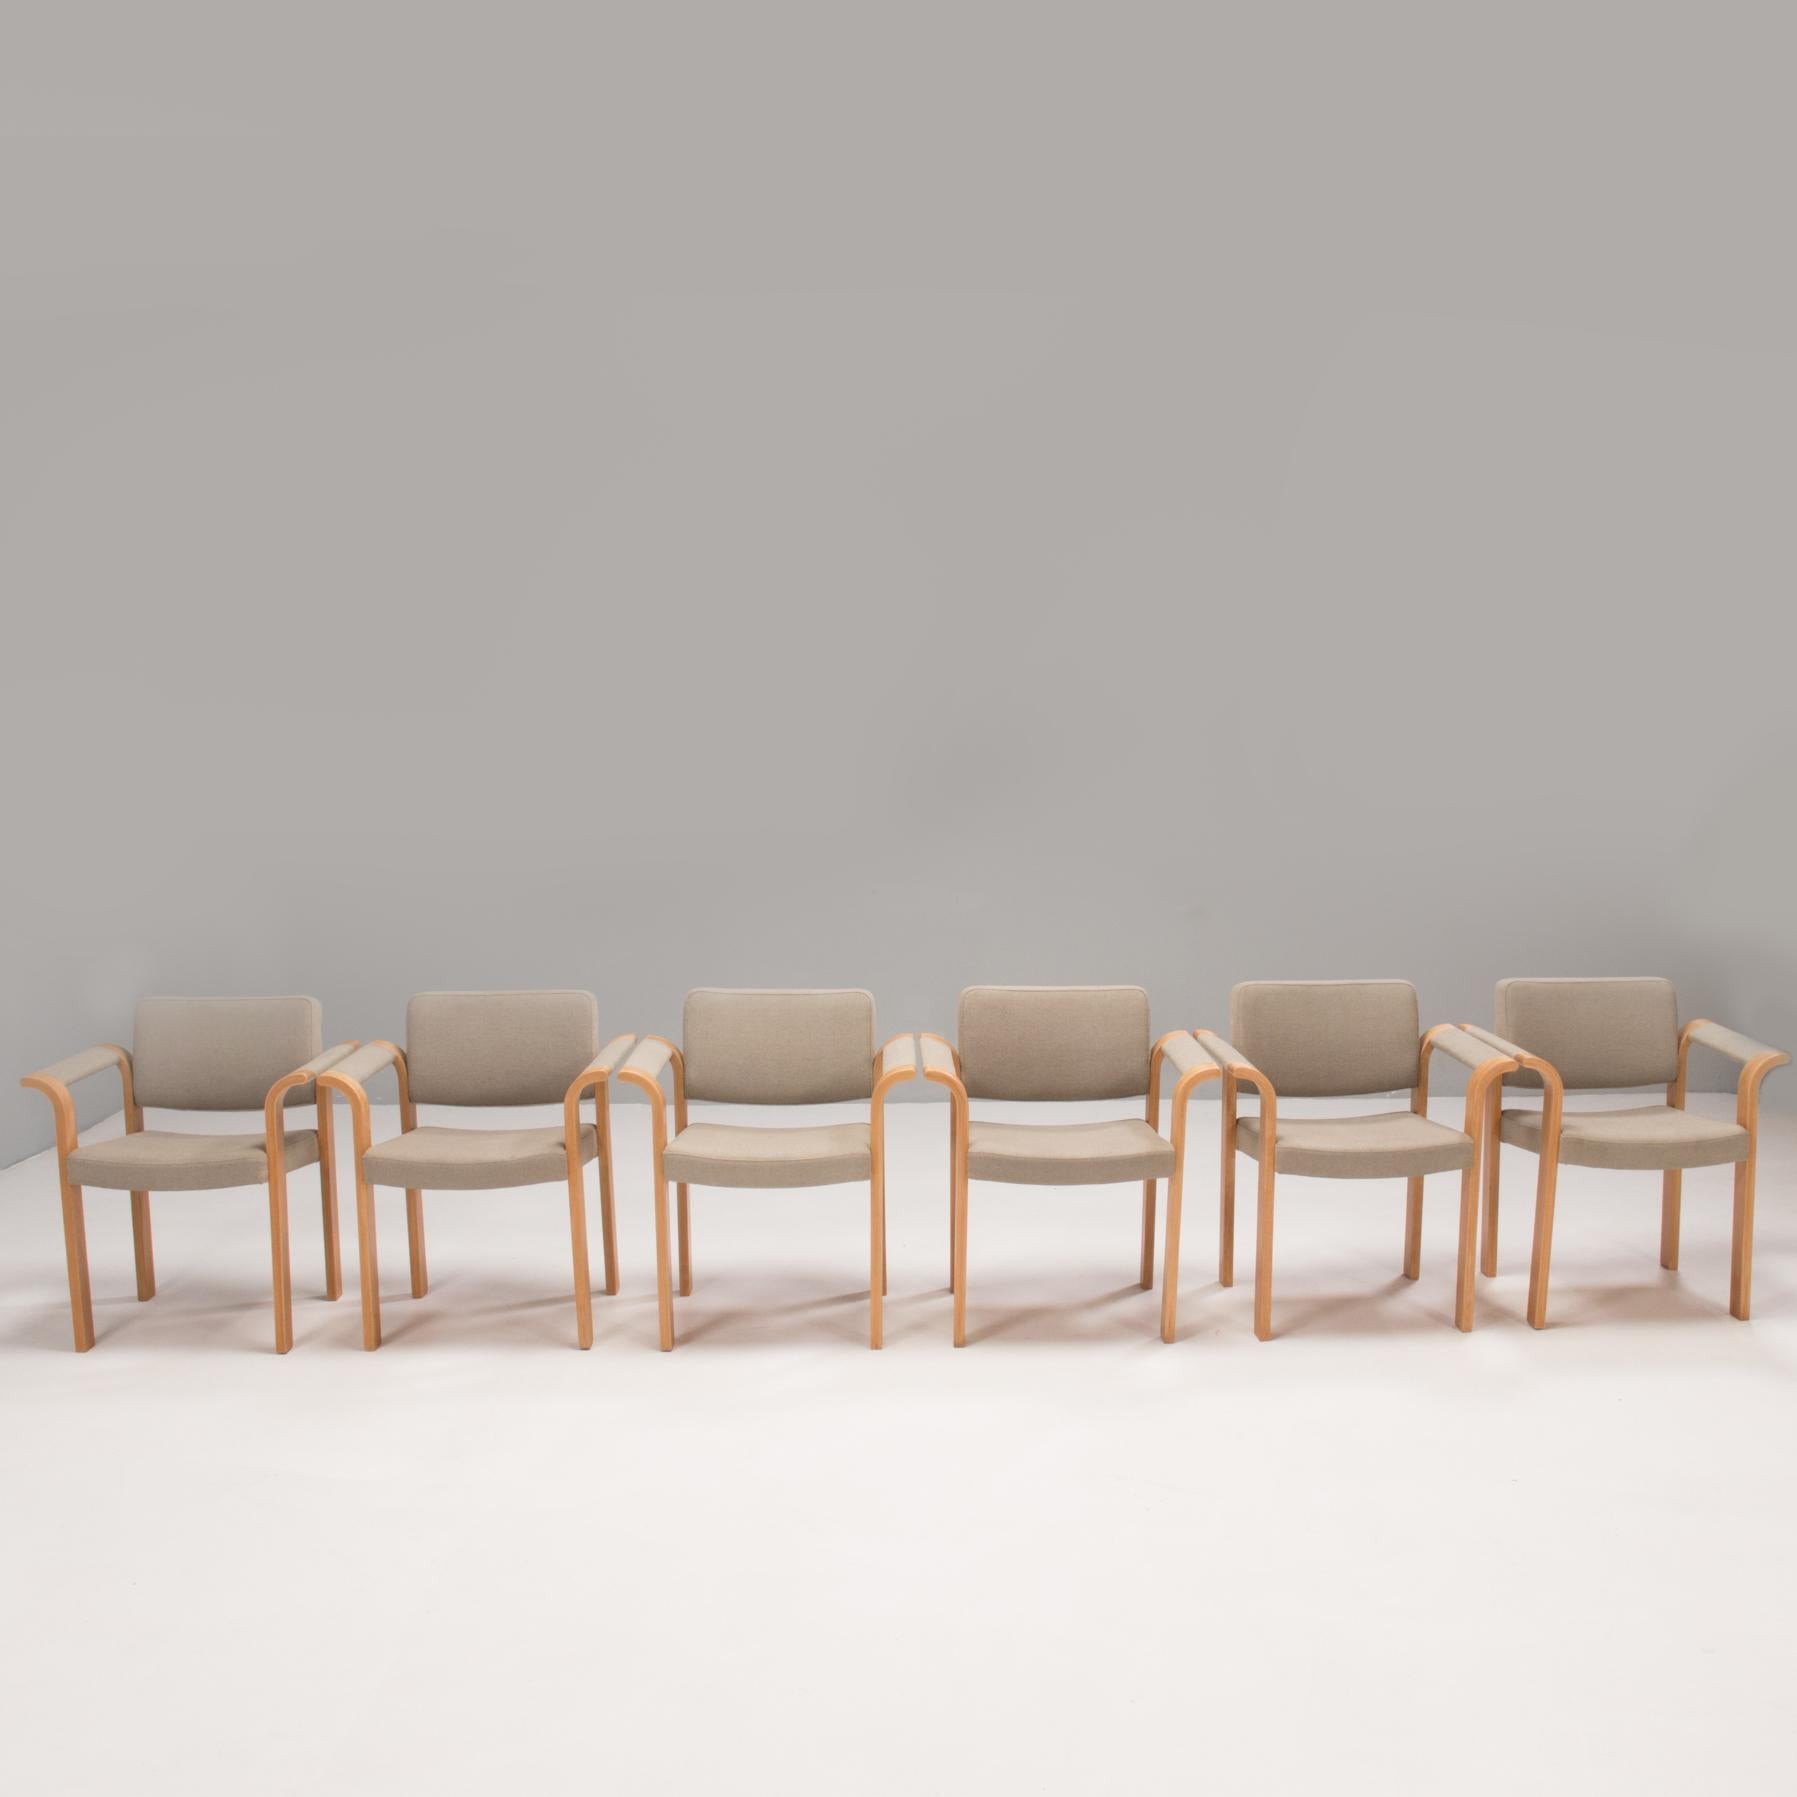 Conçues par Rud Thygesen et Johnny Sørensen et fabriquées par Magnus Olesen, ces chaises sont un exemple fantastique du design danois des années 1970.

Avec leurs cadres en bois stratifié, les chaises ont une silhouette linéaire, contrastée par